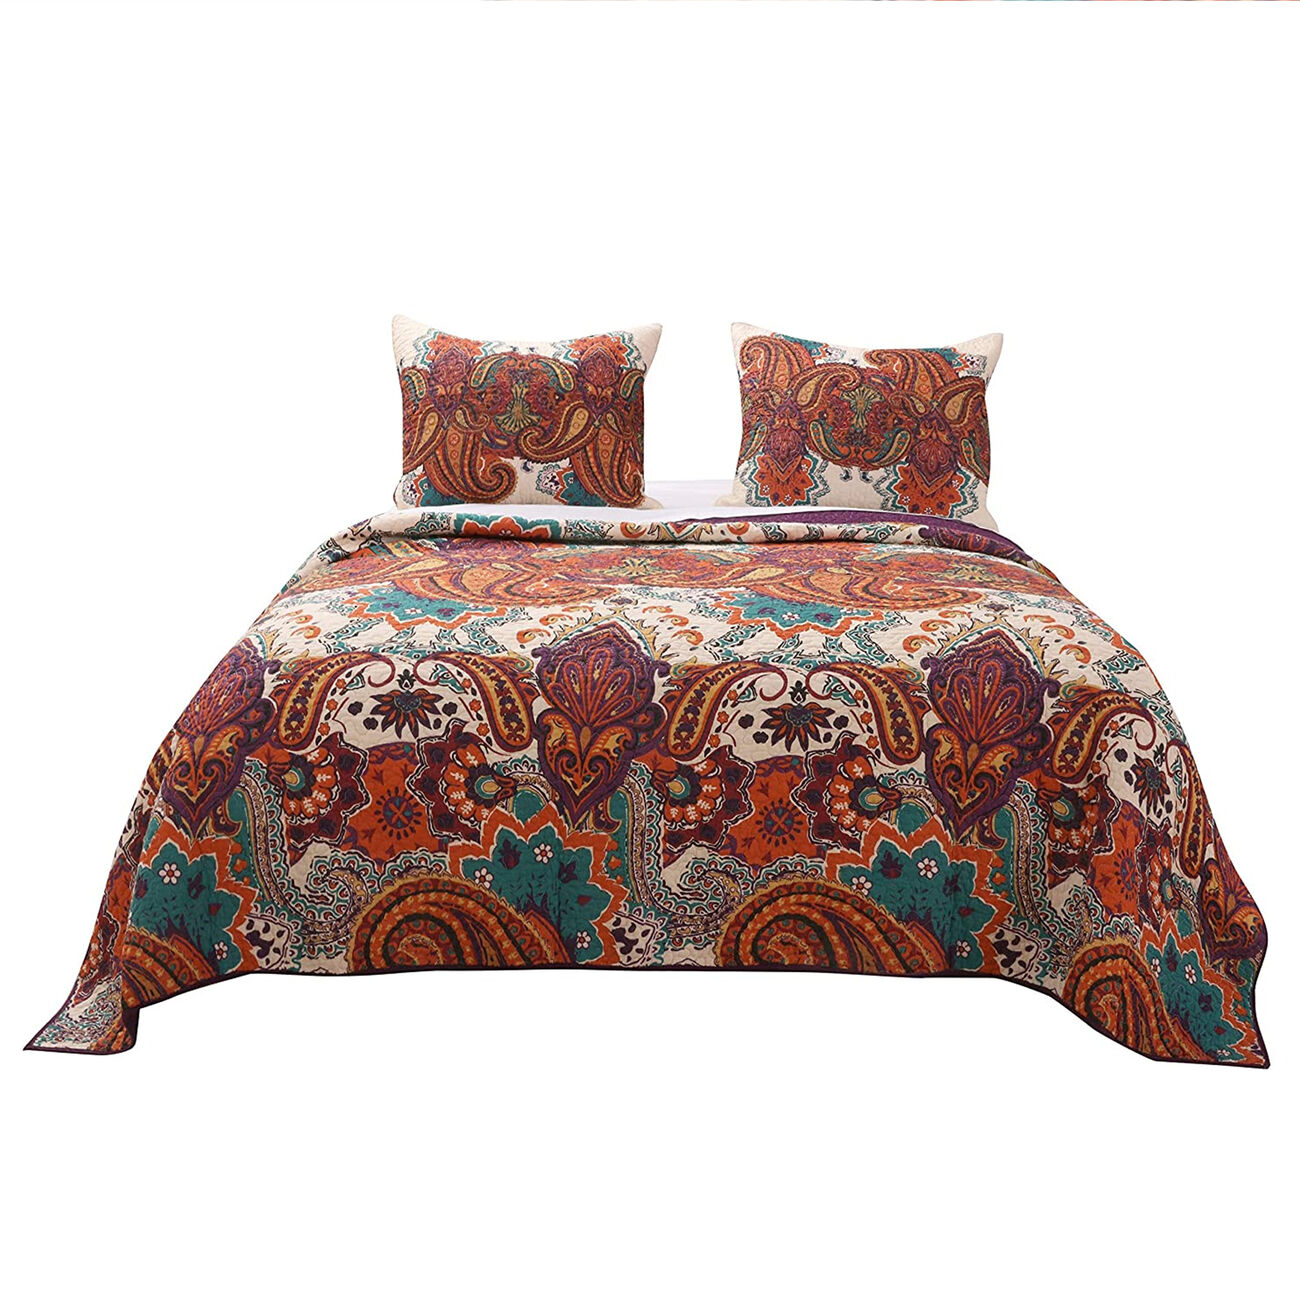 3 Piece King Size Cotton Quilt Set with Jacobean Print, Multicolor - BM223398